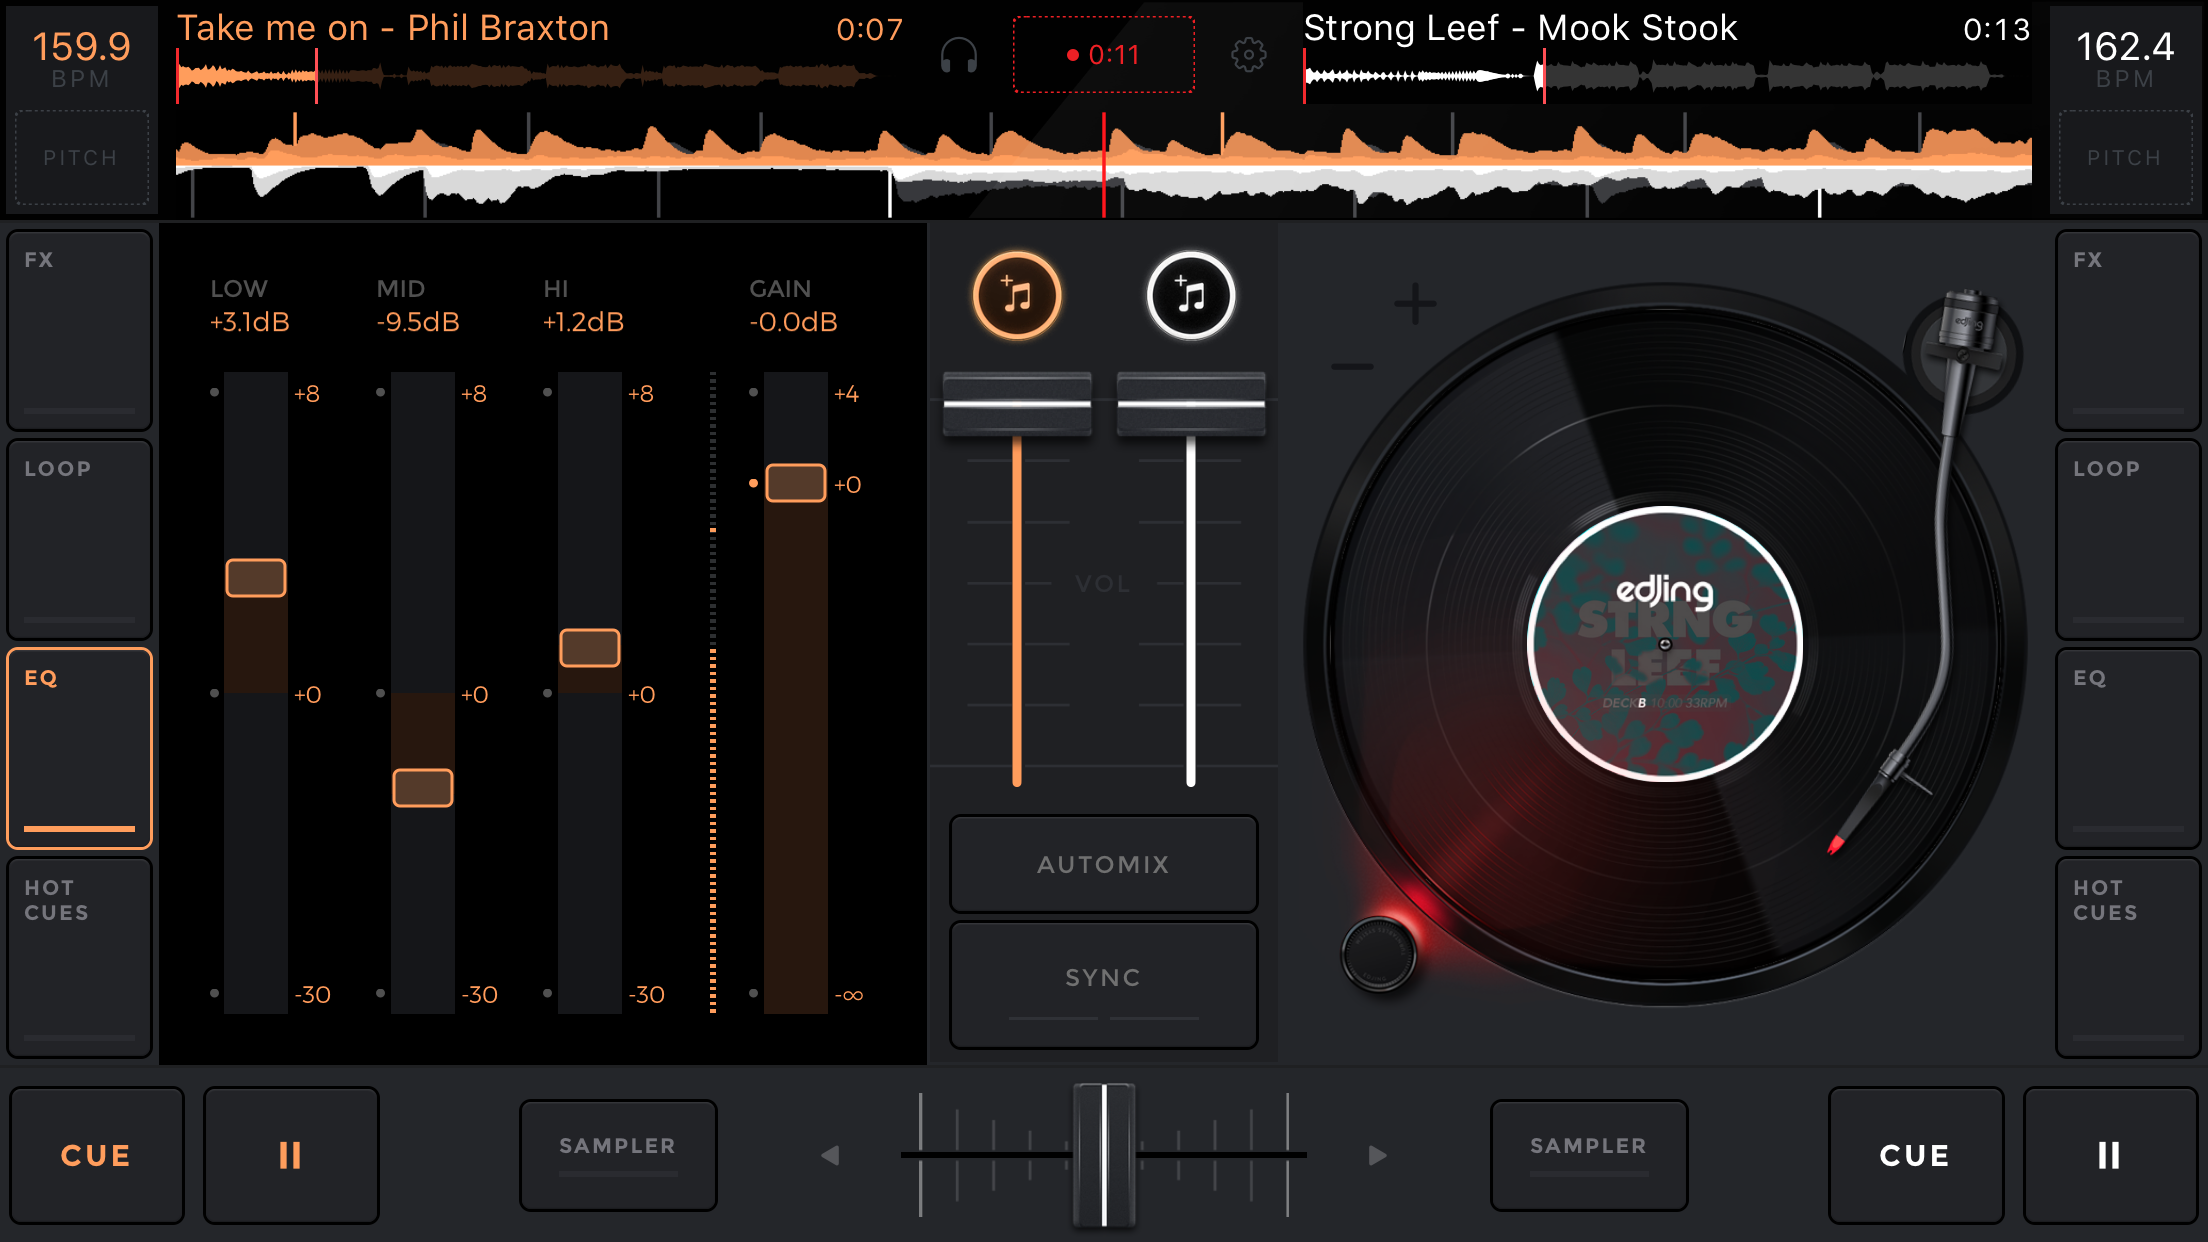 7 Juegos/Apps de DJ para mezclar música electrónica | juegos de dj | Alt13